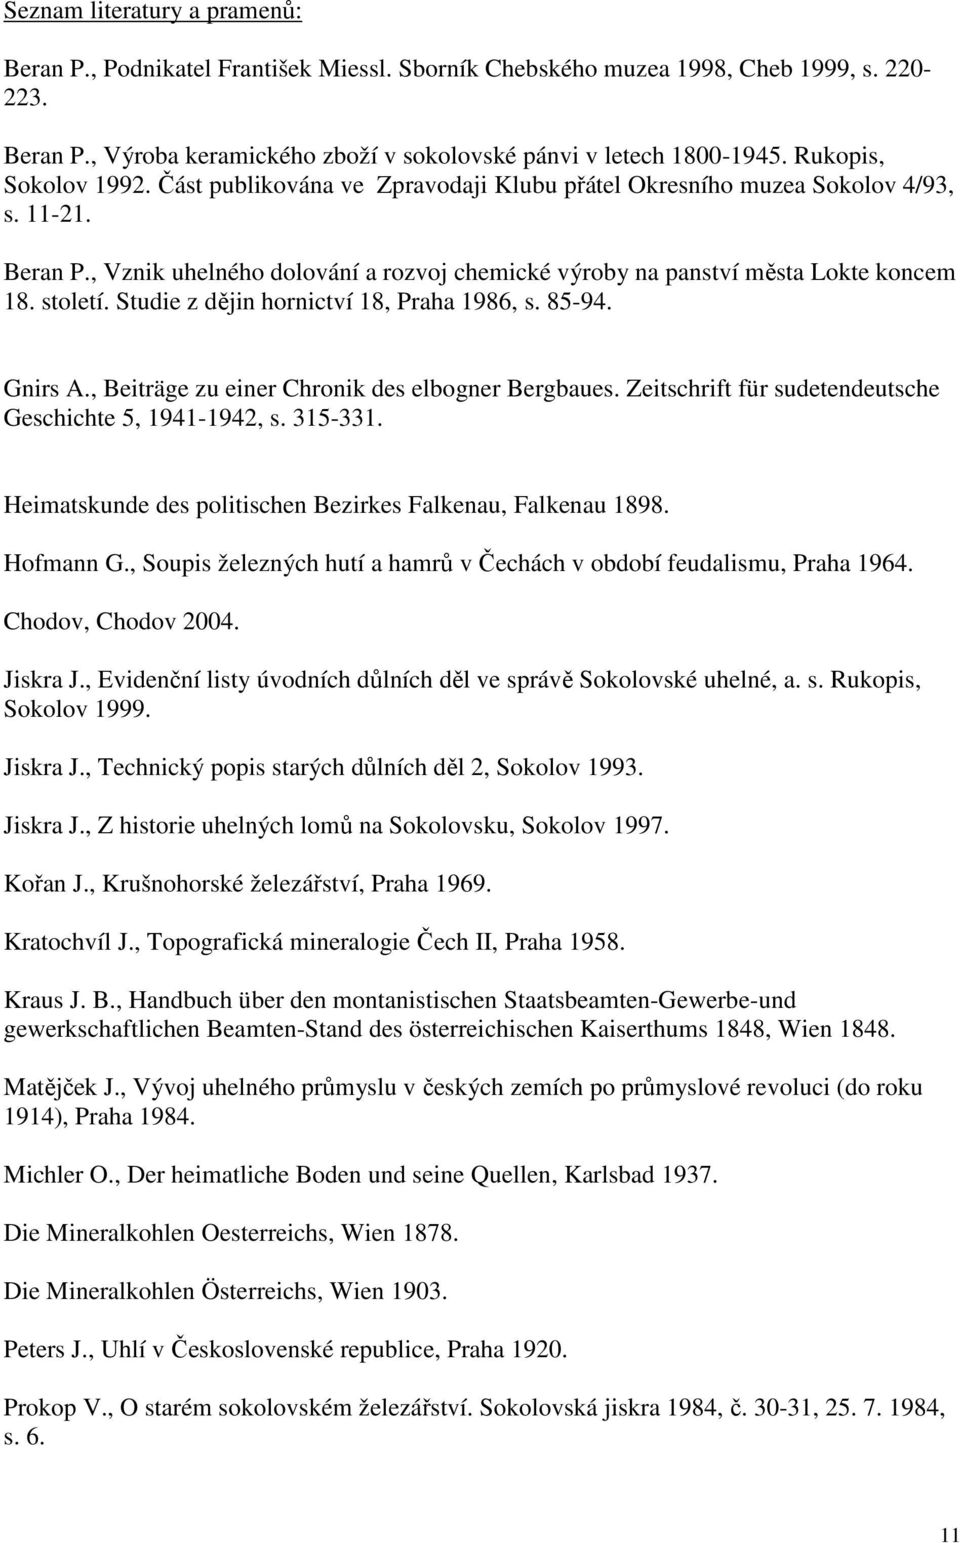 století. Studie z dějin hornictví 18, Praha 1986, s. 85-94. Gnirs A., Beiträge zu einer Chronik des elbogner Bergbaues. Zeitschrift für sudetendeutsche Geschichte 5, 1941-1942, s. 315-331.